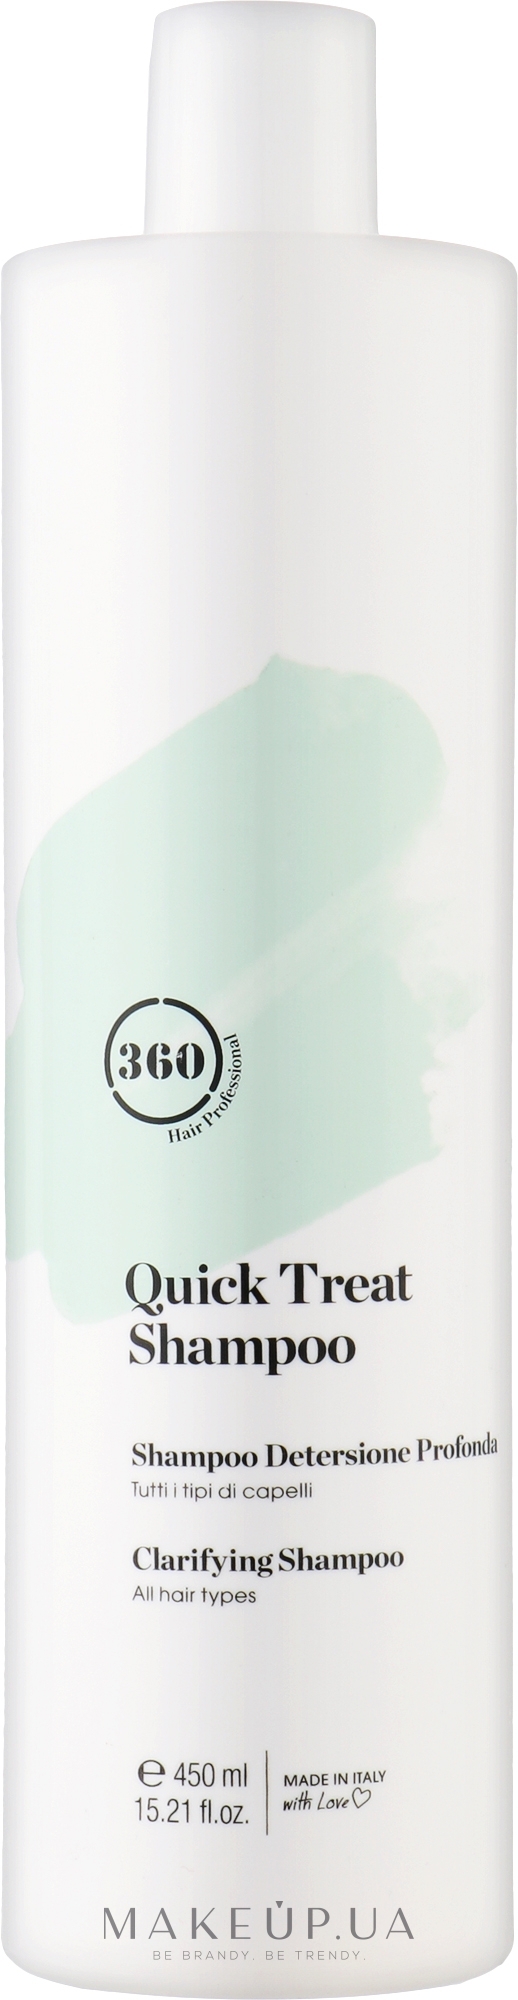 Шампунь для глубокого очищения всех типов волос - 360 Be Quick Treat Shampoo — фото 450ml